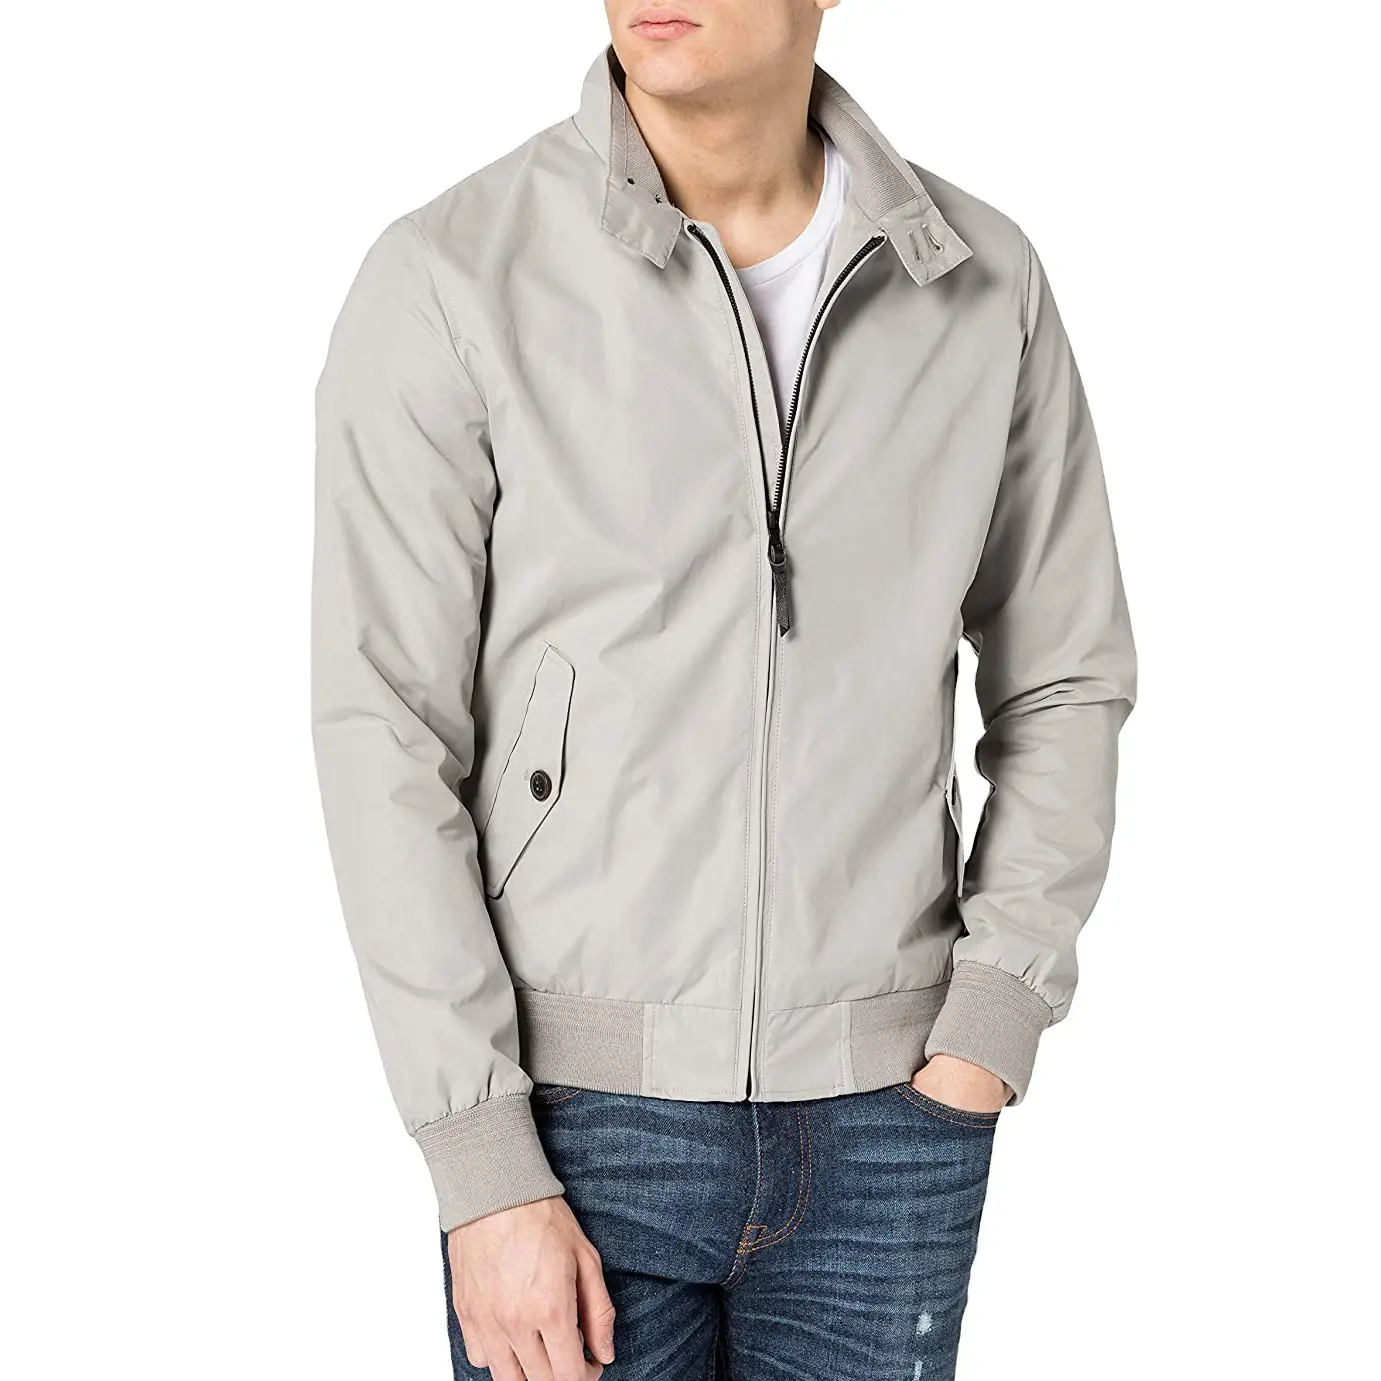 Softshell jacket OEM customized men's jacket embroidery Flight Custom Bomber Jacket for men with customization